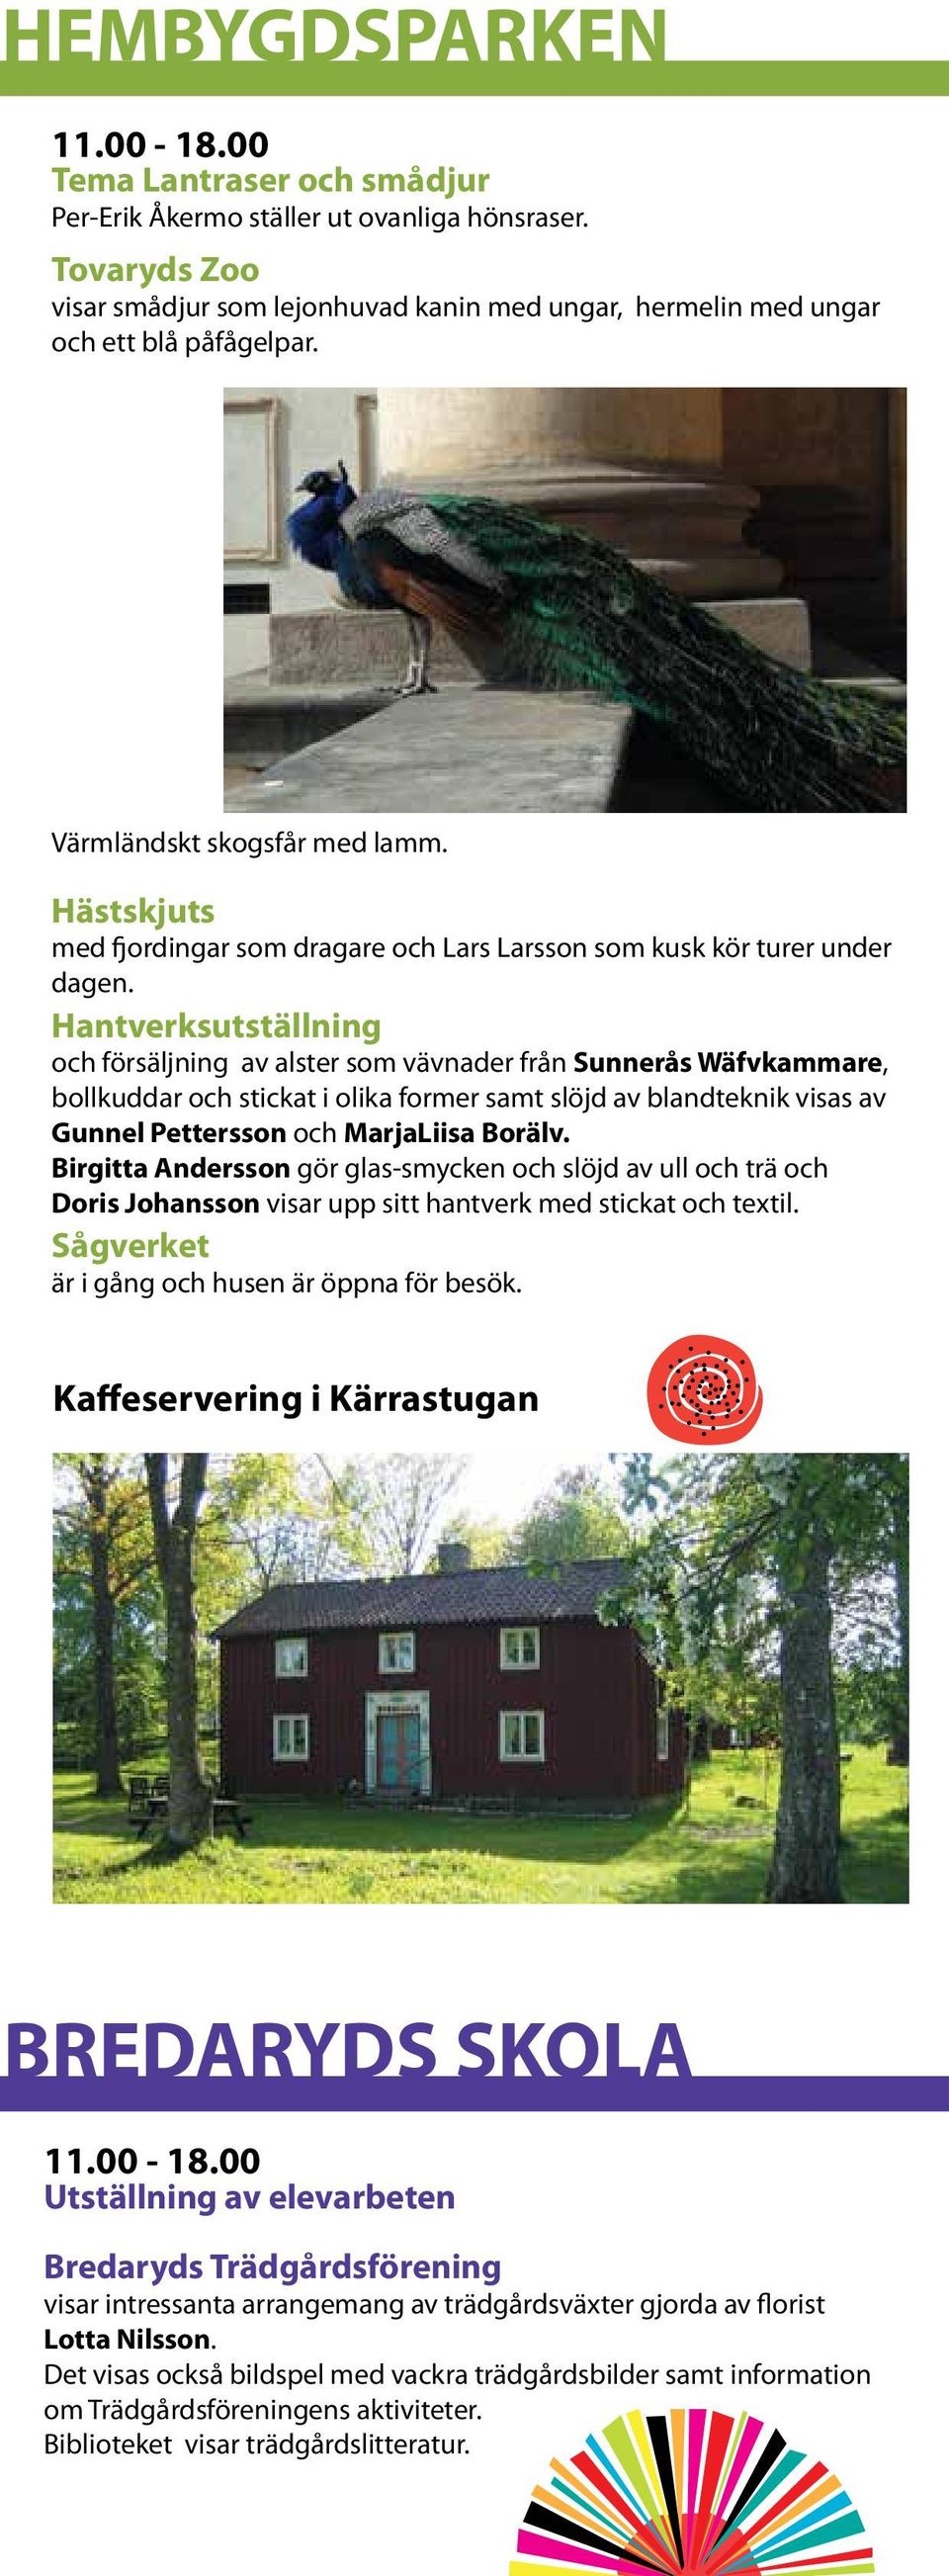 Hantverksutställning och försäljning av alster som vävnader från Sunnerås Wäfvkammare, bollkuddar och stickat i olika former samt slöjd av blandteknik visas av Gunnel Pettersson och MarjaLiisa Borälv.